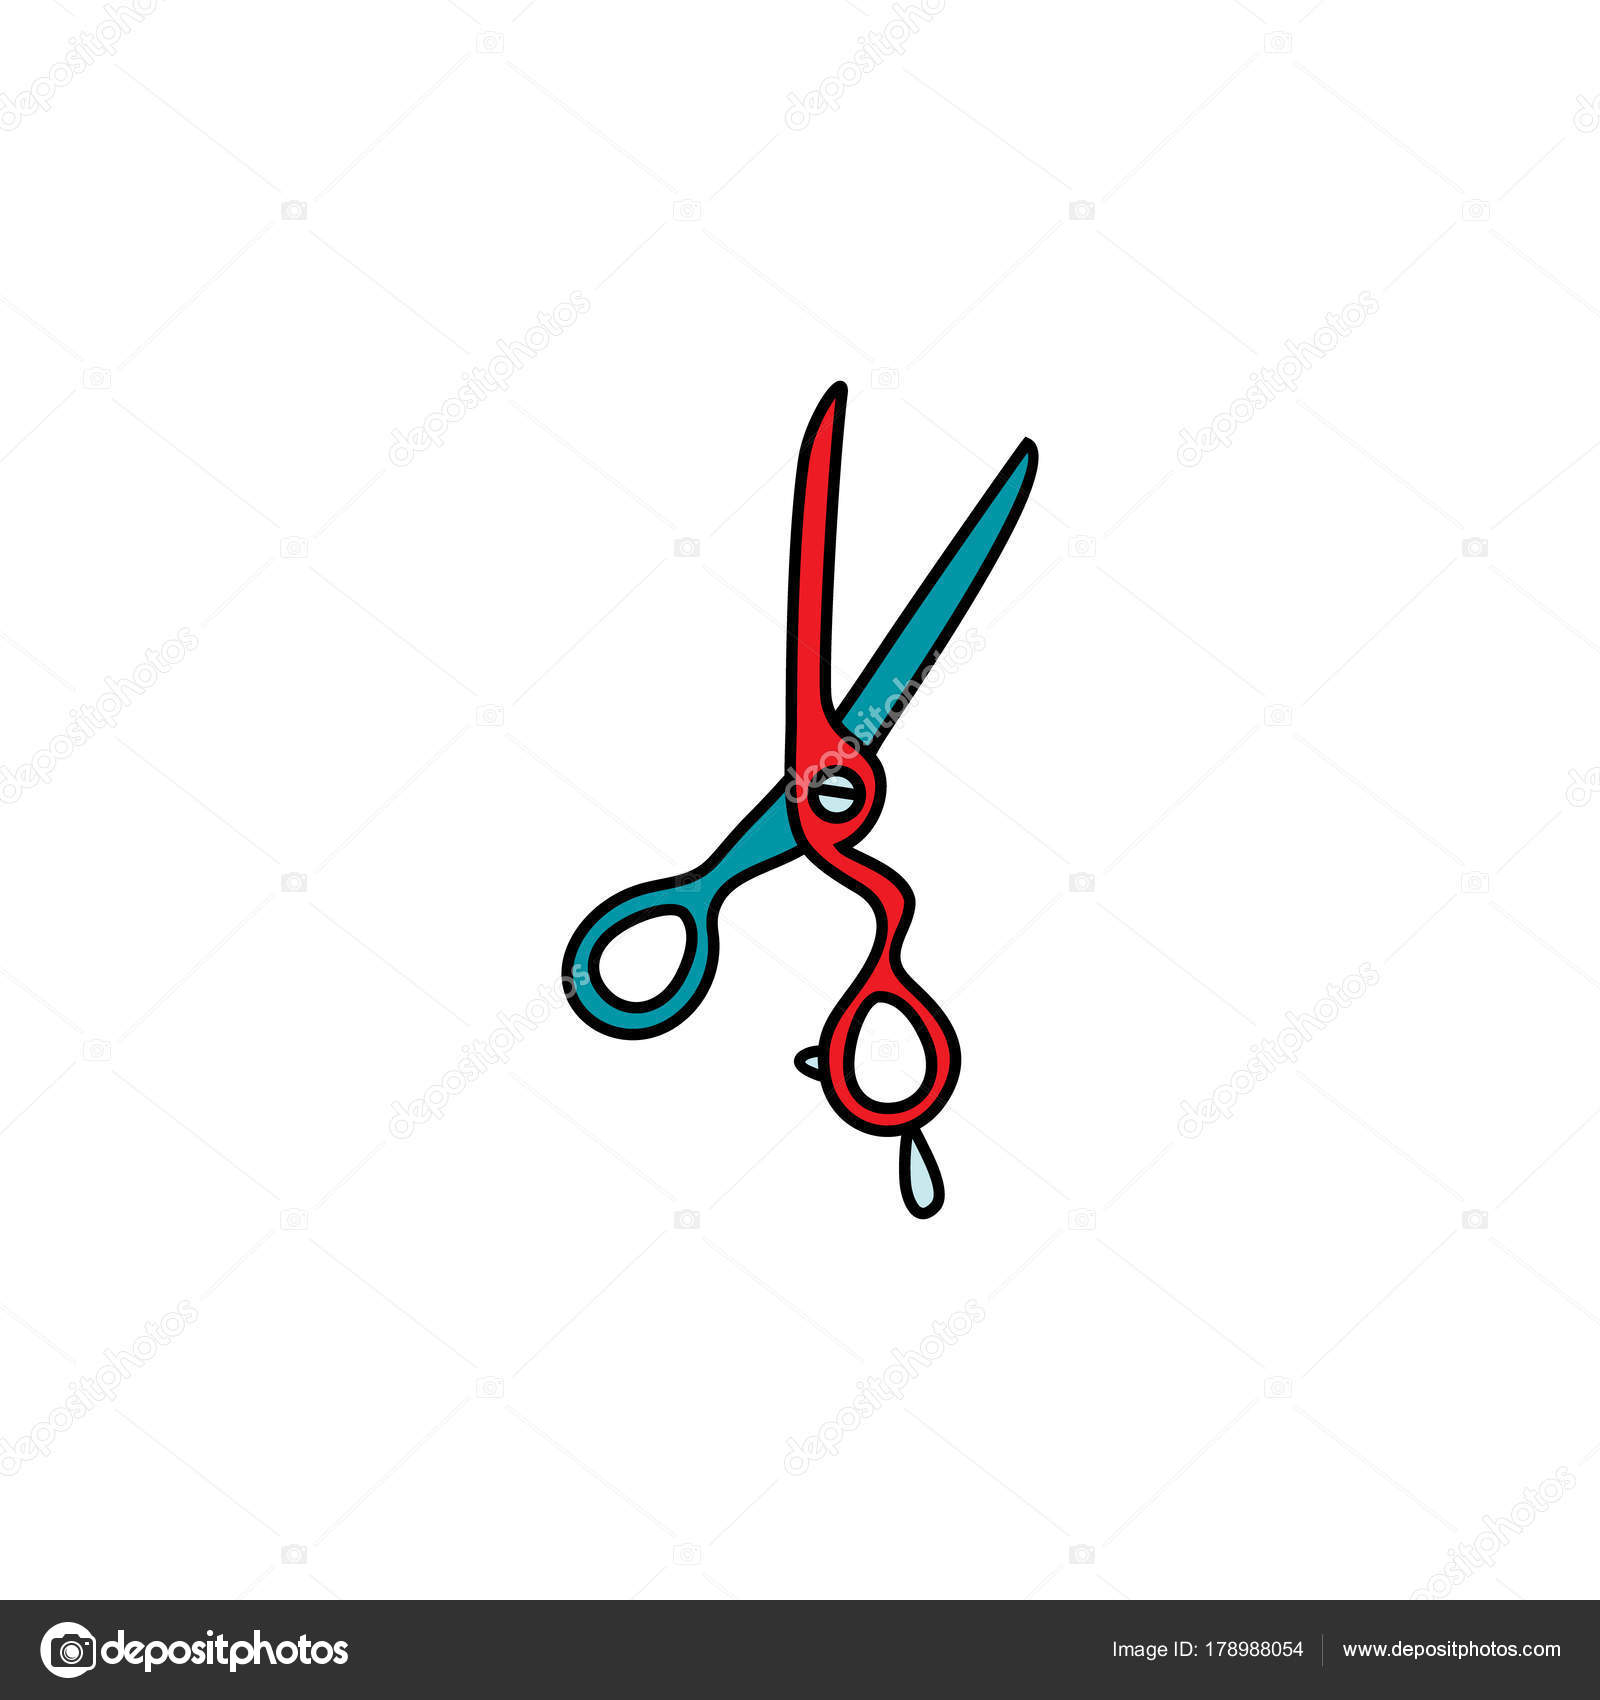 Scissors Vector Design Illustration Isolated On White Background